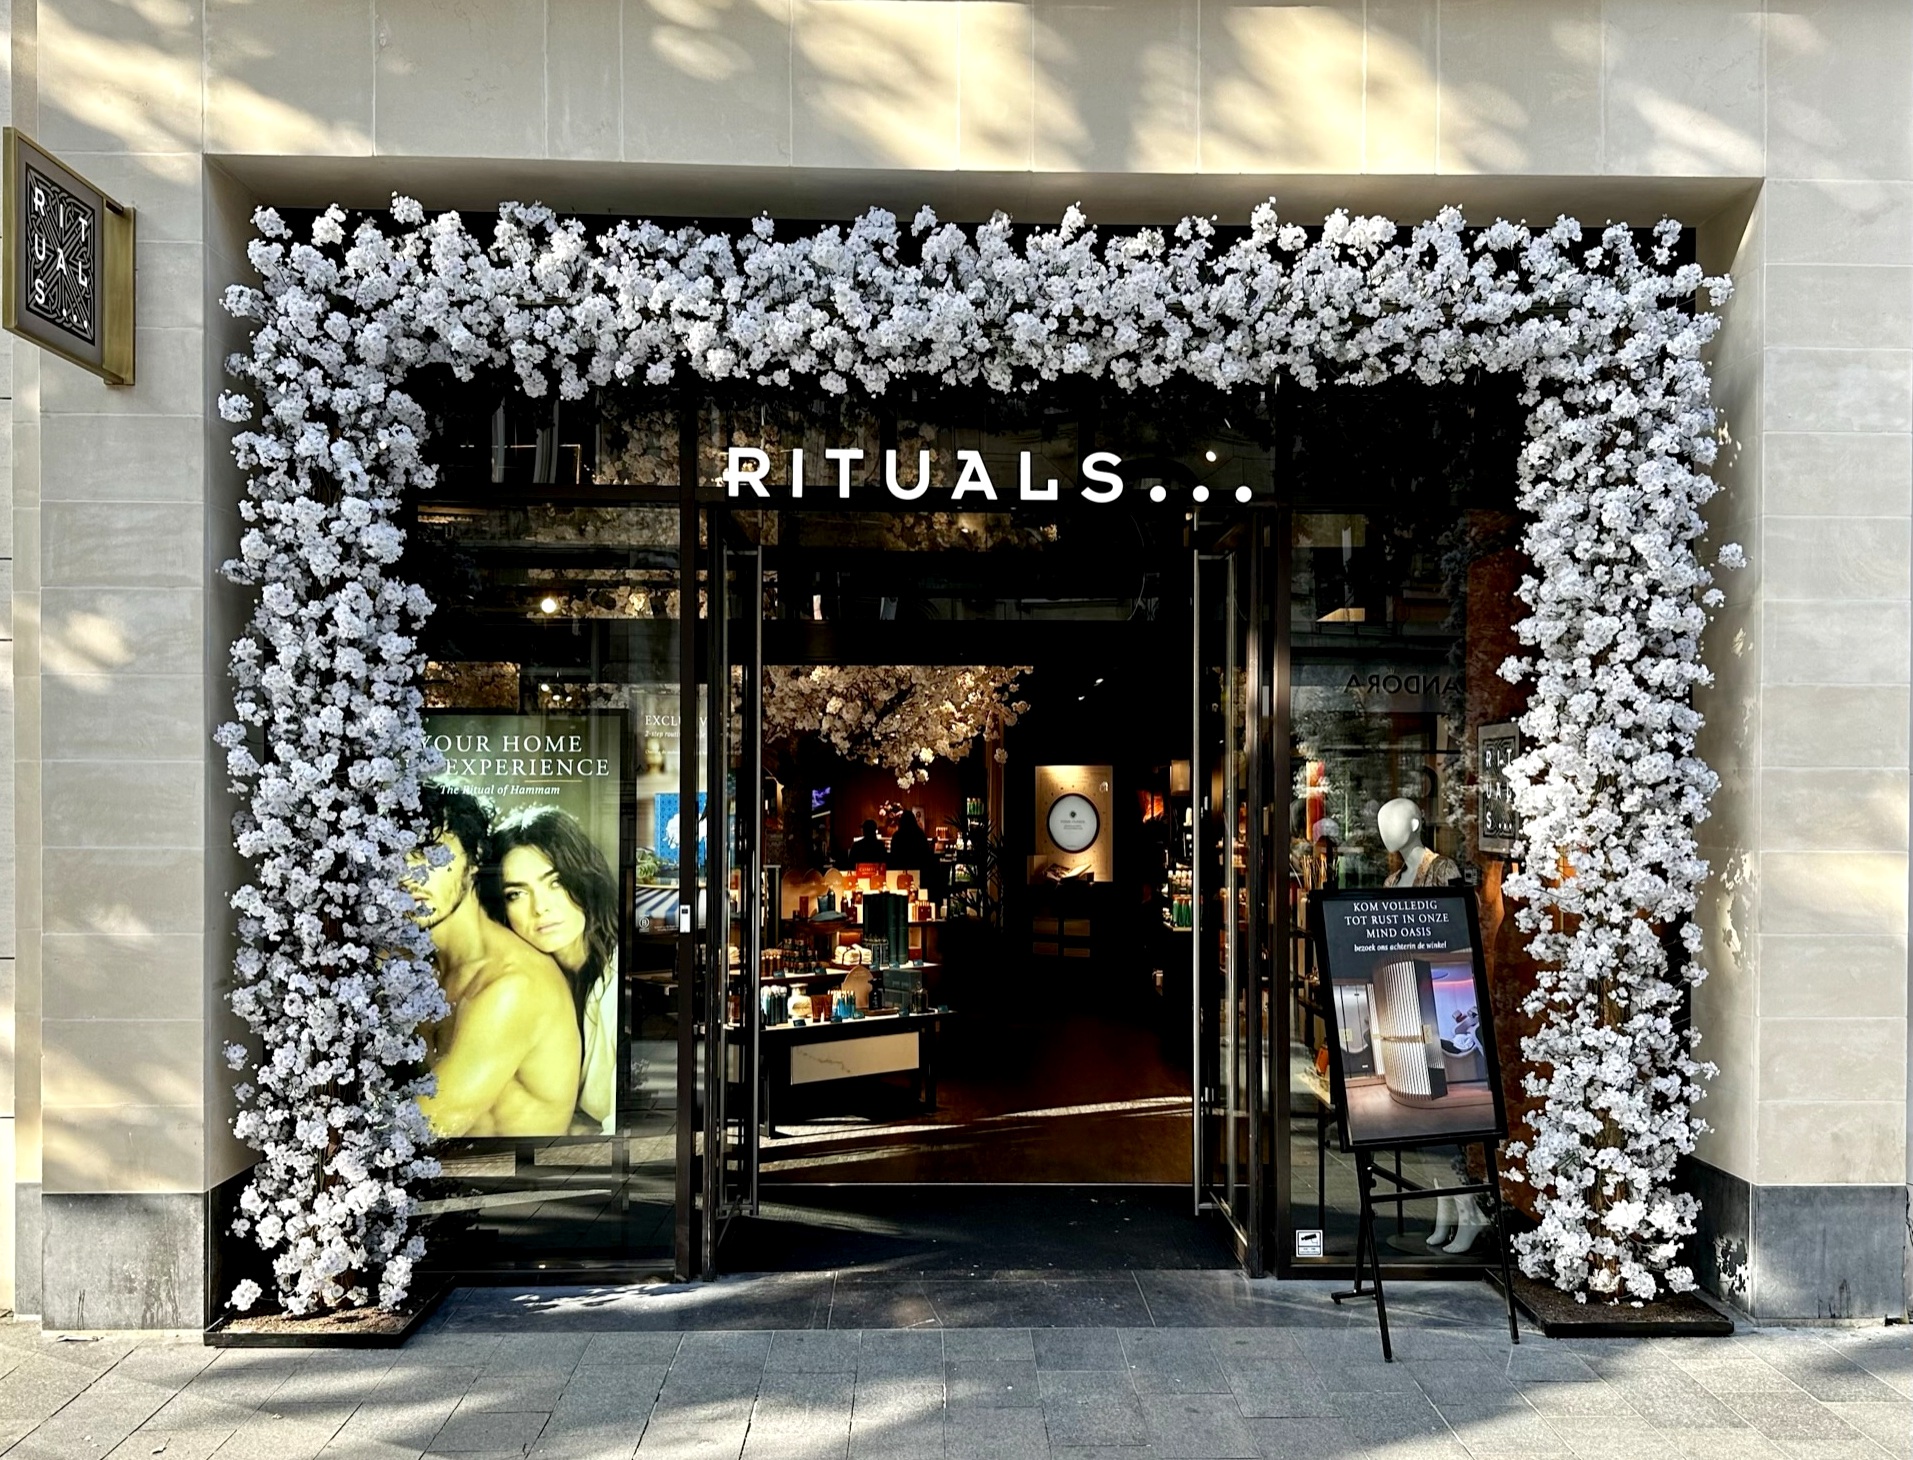 Rituals wins “ritual” trademark case against The Body Shop – DutchNews.nl